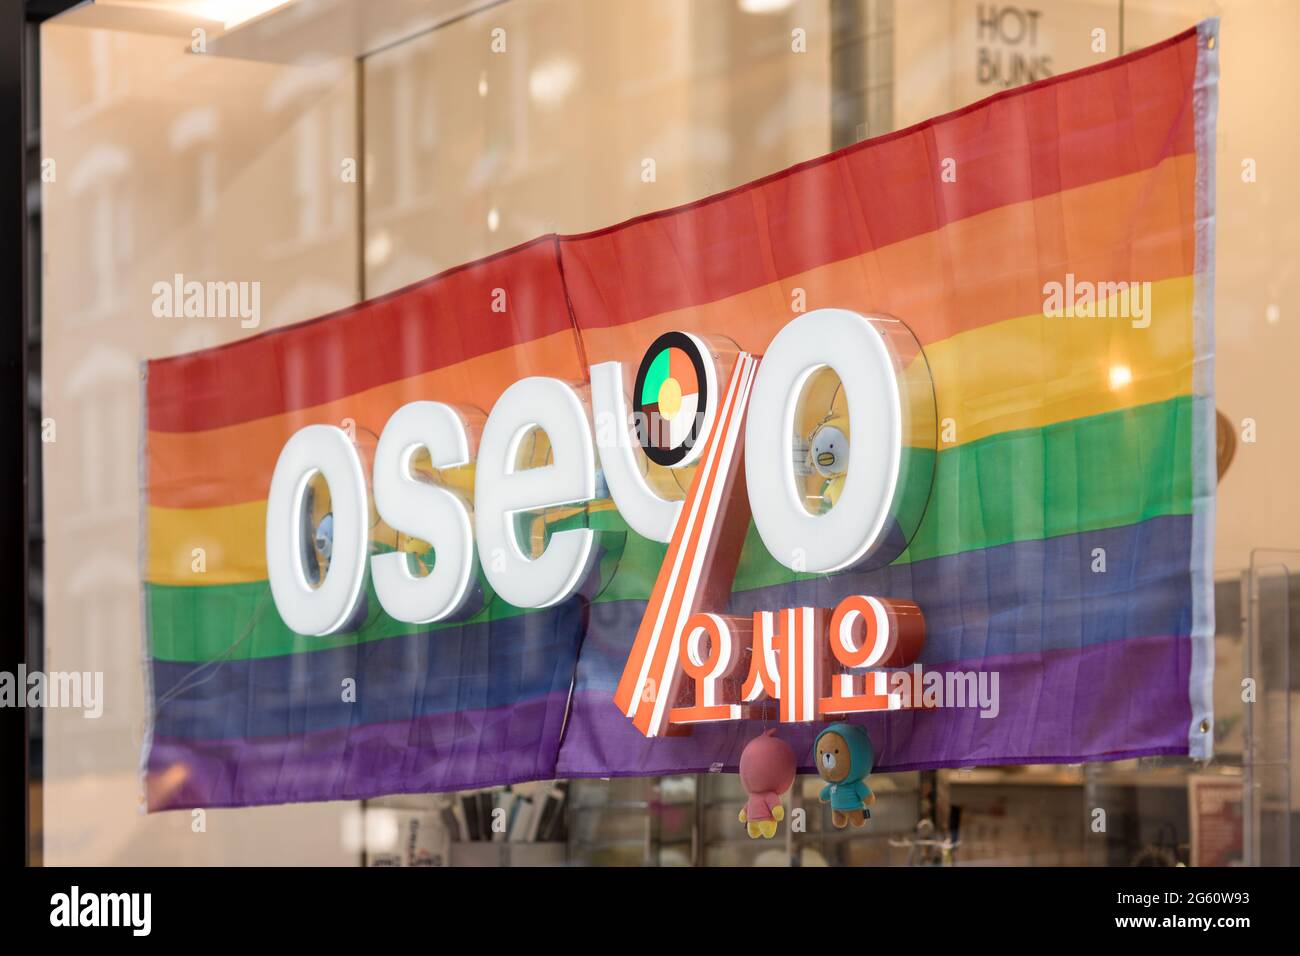 London, Großbritannien. Juli 2021. Oseyo-Logo mit Regenbogenflagge im Schaufenstergeschäft am Leicester Square in London.der Juni ist in Großbritannien traditionell der Pride-Monat. Zur Feier der Pride-Bewegung werden Geschäfte und Unternehmen in ganz London mit regenbogenfarbenen Dekorationen und Schildern gesehen, um ihre Unterstützung für die LGBT-Gemeinschaft und ihre Rechte zu zeigen. Viele große Geschäfte hoben die Regenbogenflagge, während kleinere Geschäfte ihr Engagement für Vielfalt und Einbeziehung durch regenbogenfarbene Aufkleber und Schilder zum Ausdruck brachten. Quelle: Belinda Jiao/SOPA Images/ZUMA Wire/Alamy Live News Stockfoto